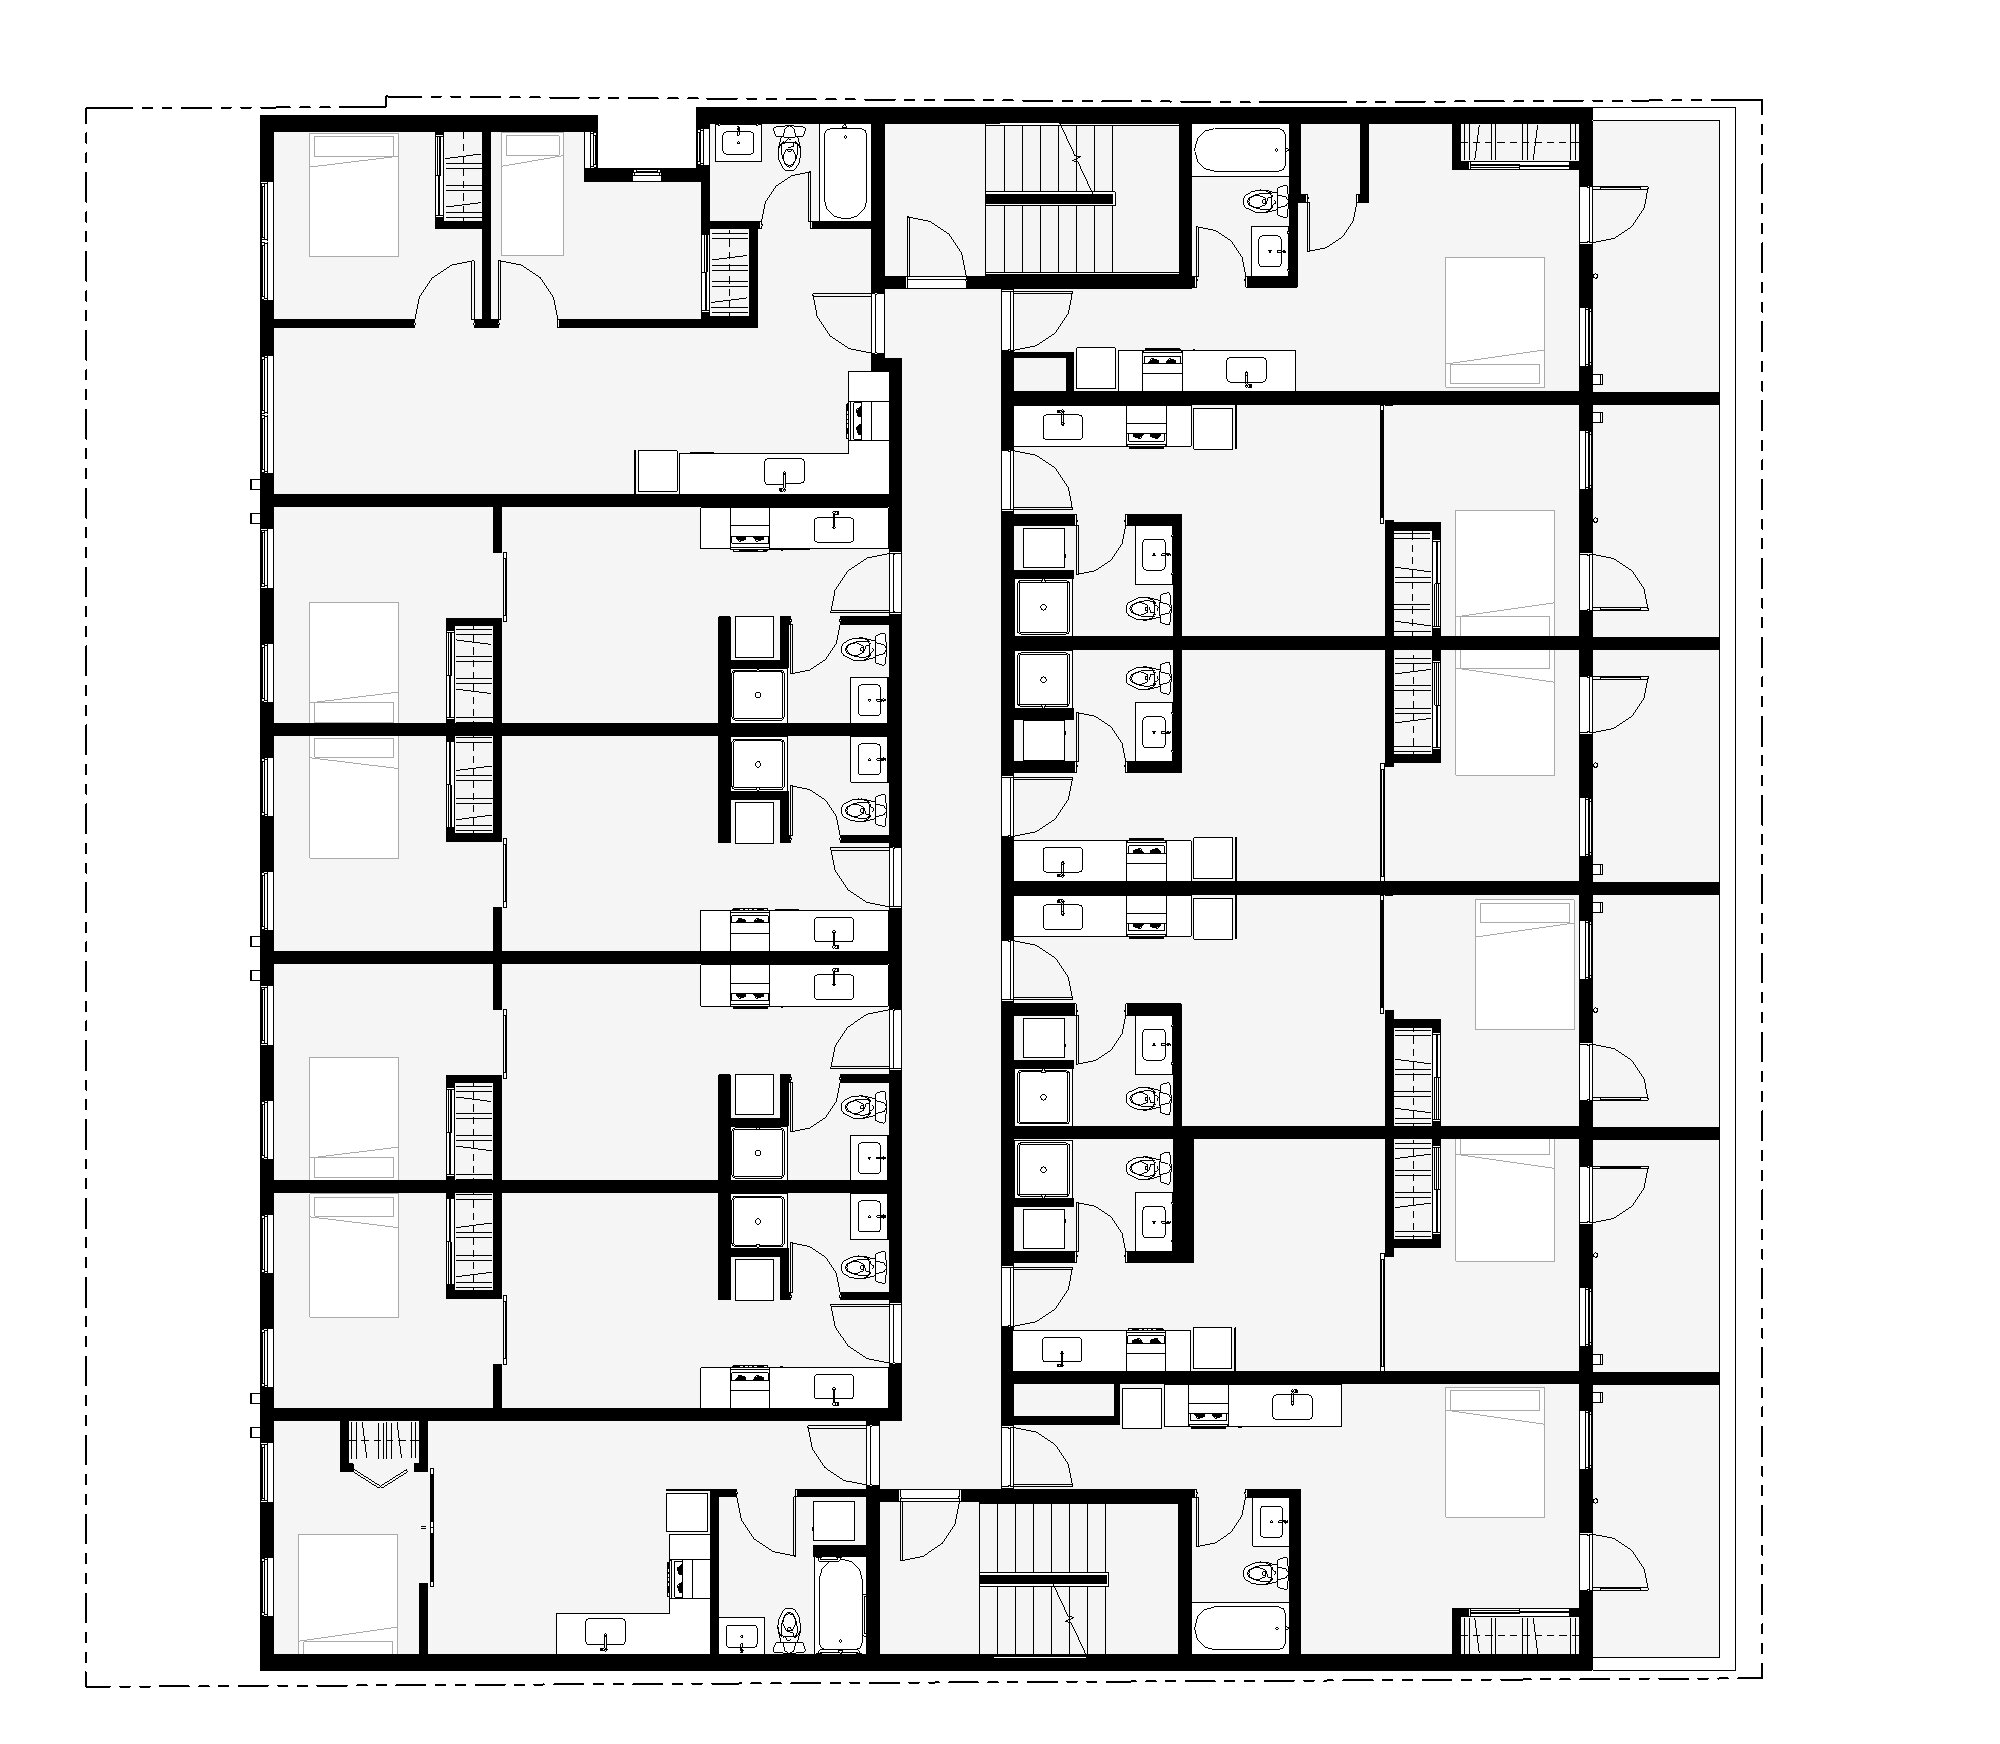 Paar 8541_CA6-2018 (post permit revision) - Floor Plan - LEVEL 3 (MARKETING).jpg